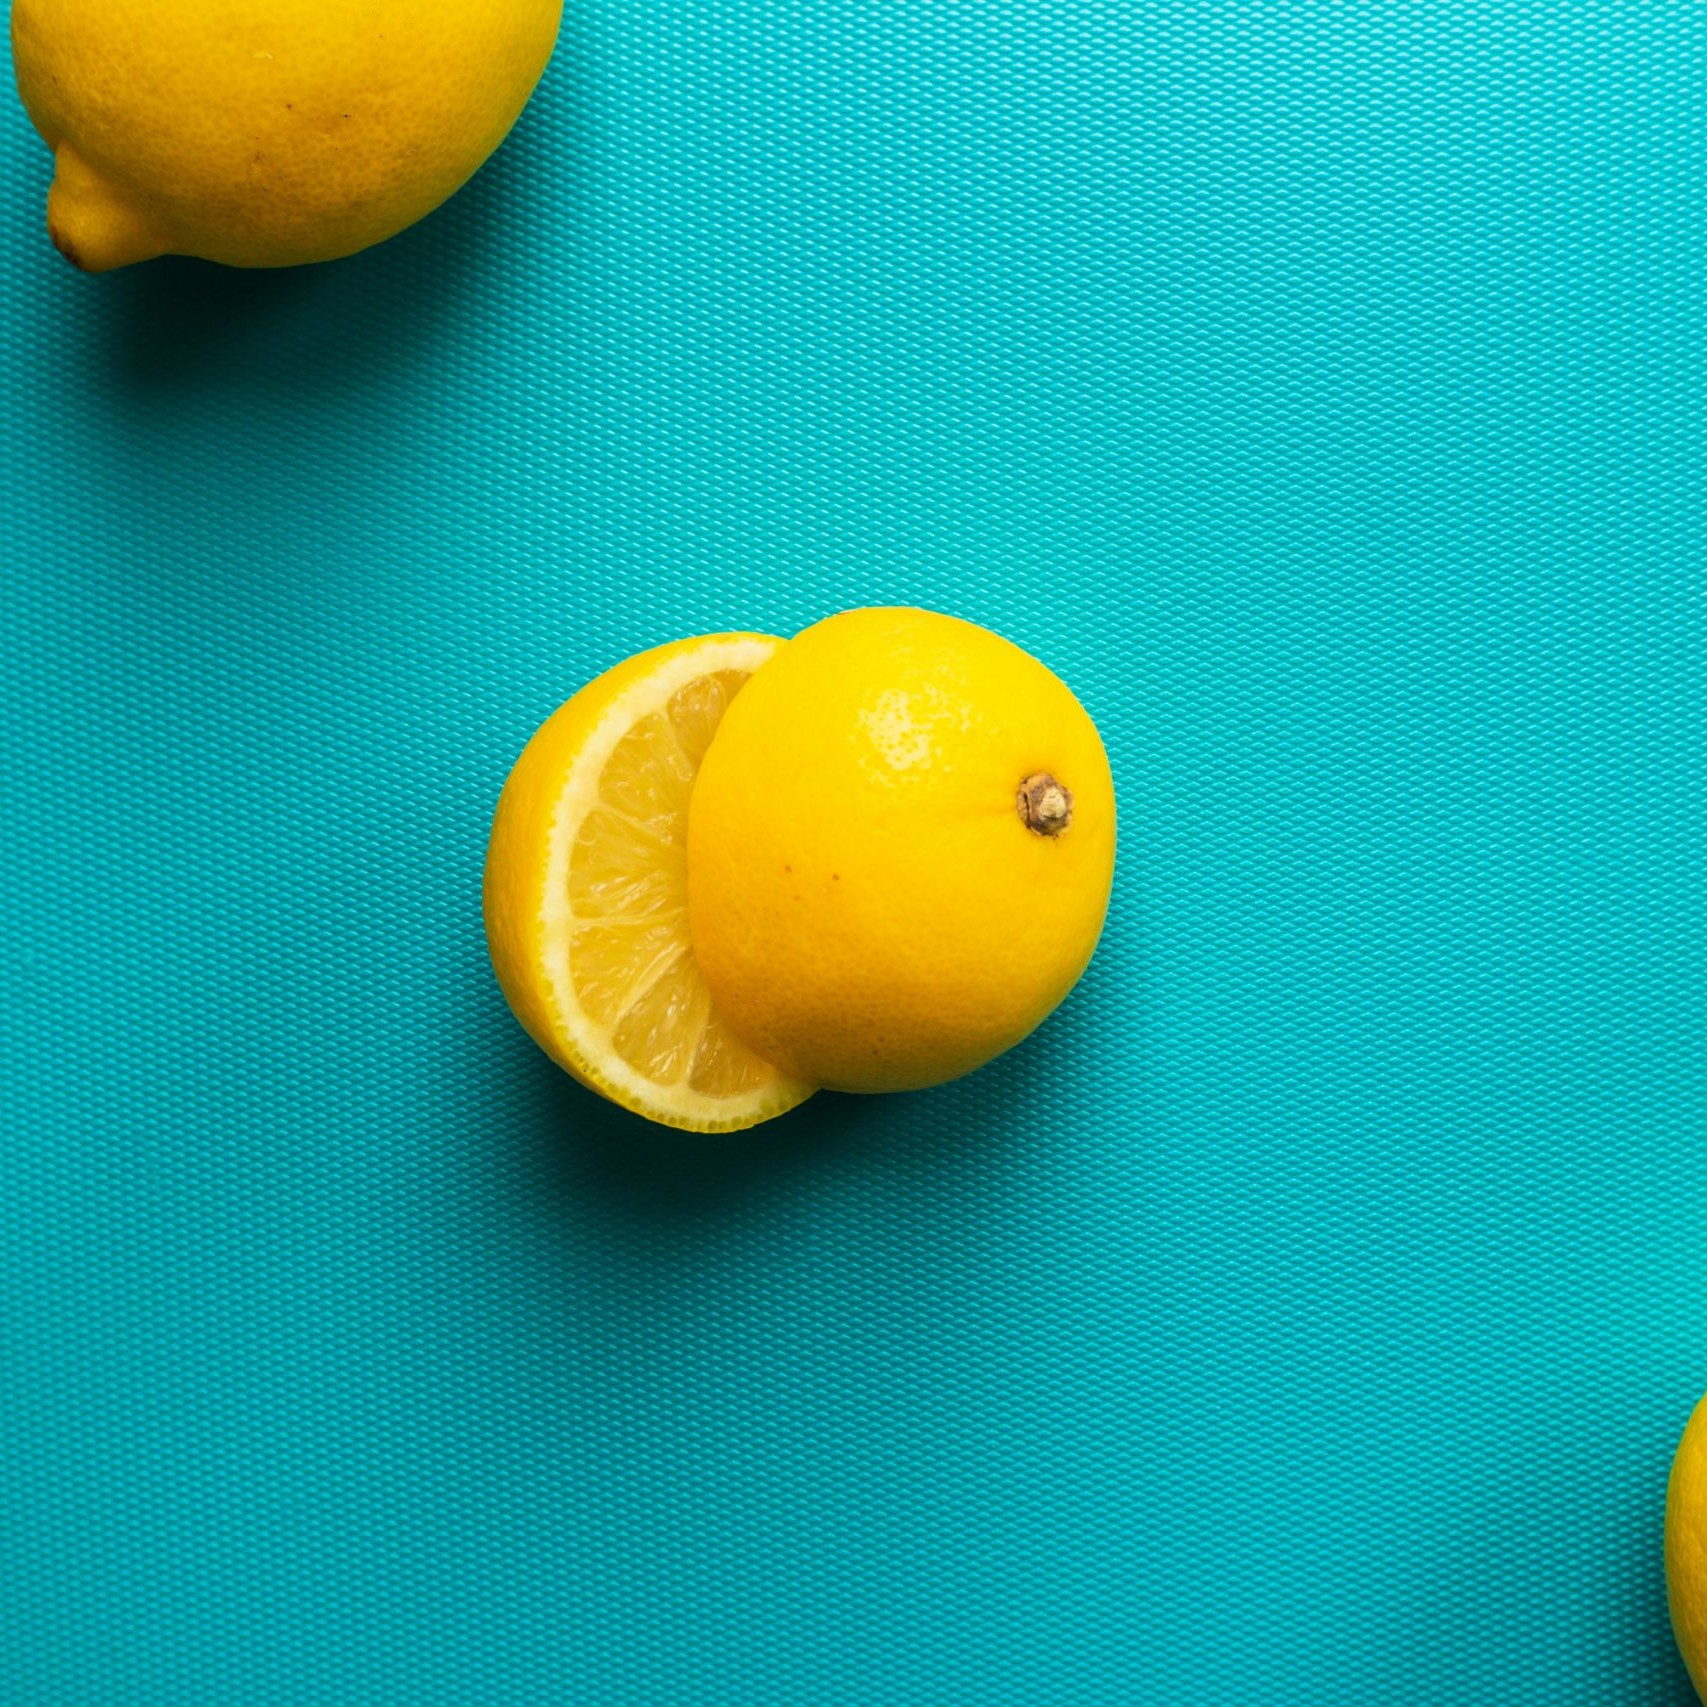 Glamorous photo of three lemons, one sliced